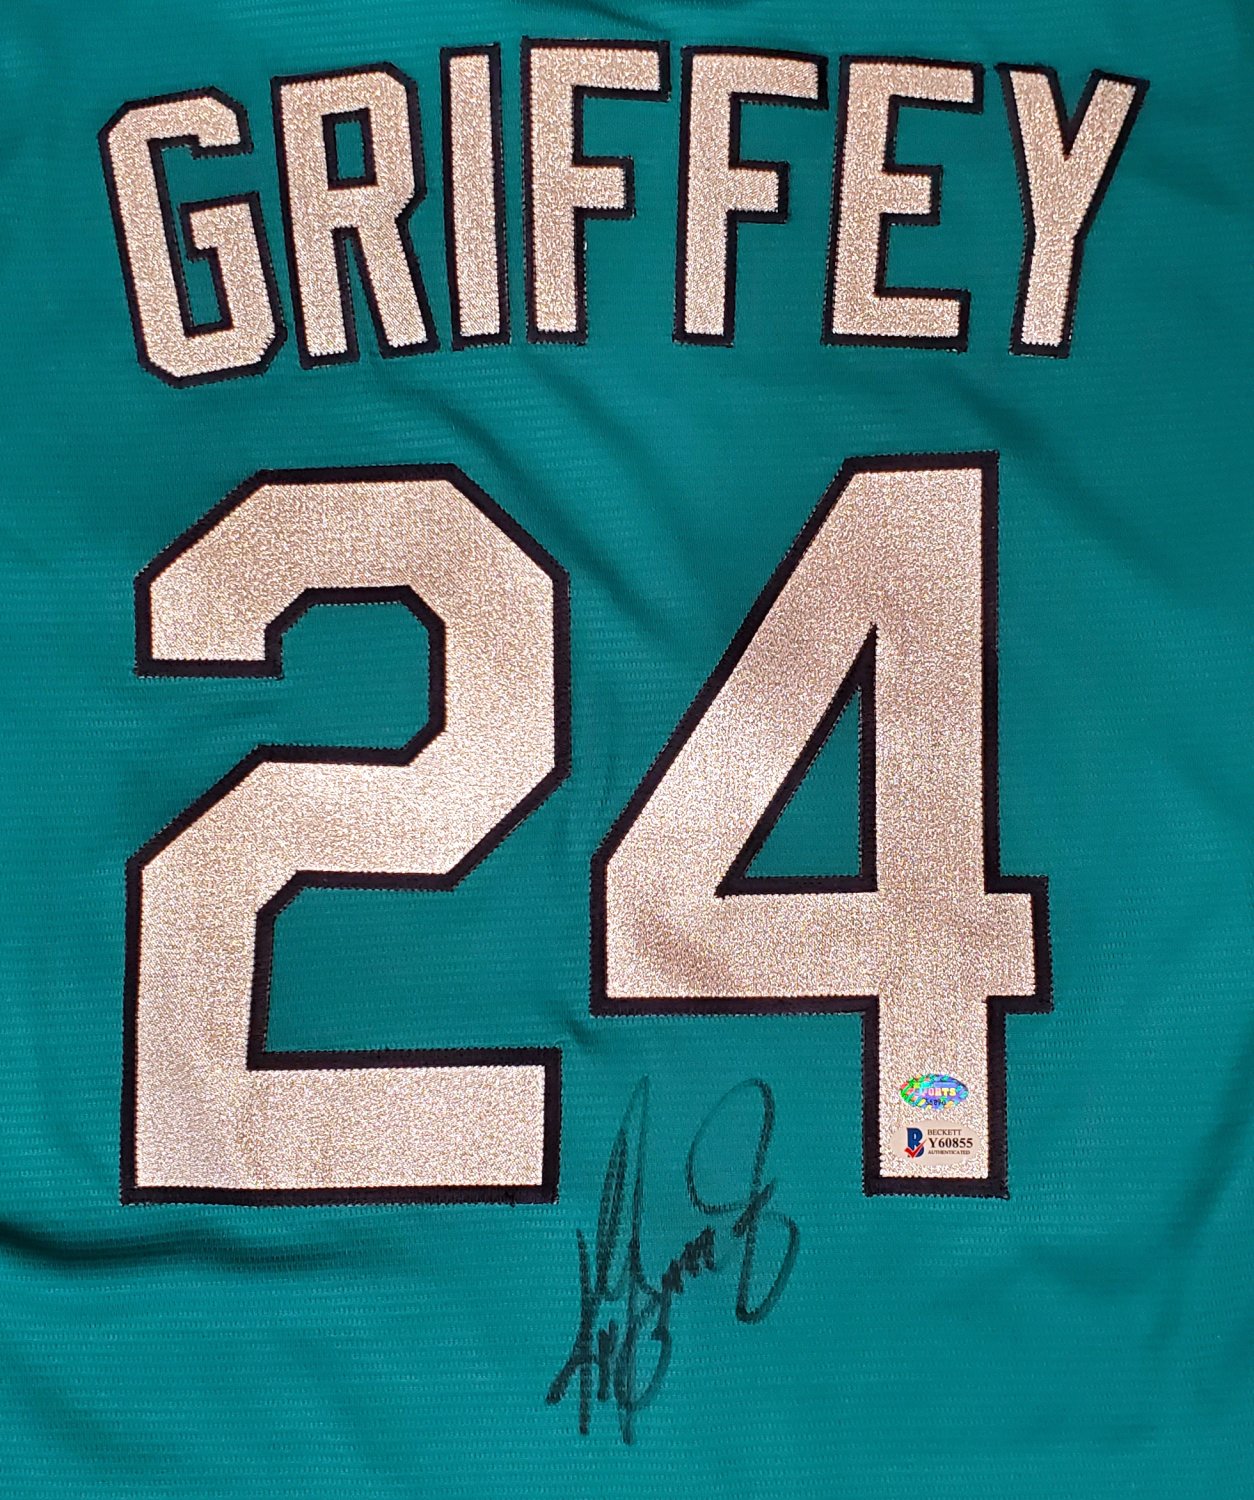 Ken Griffey Jr. Autographed Seattle Mariners Alternate Nike Jersey